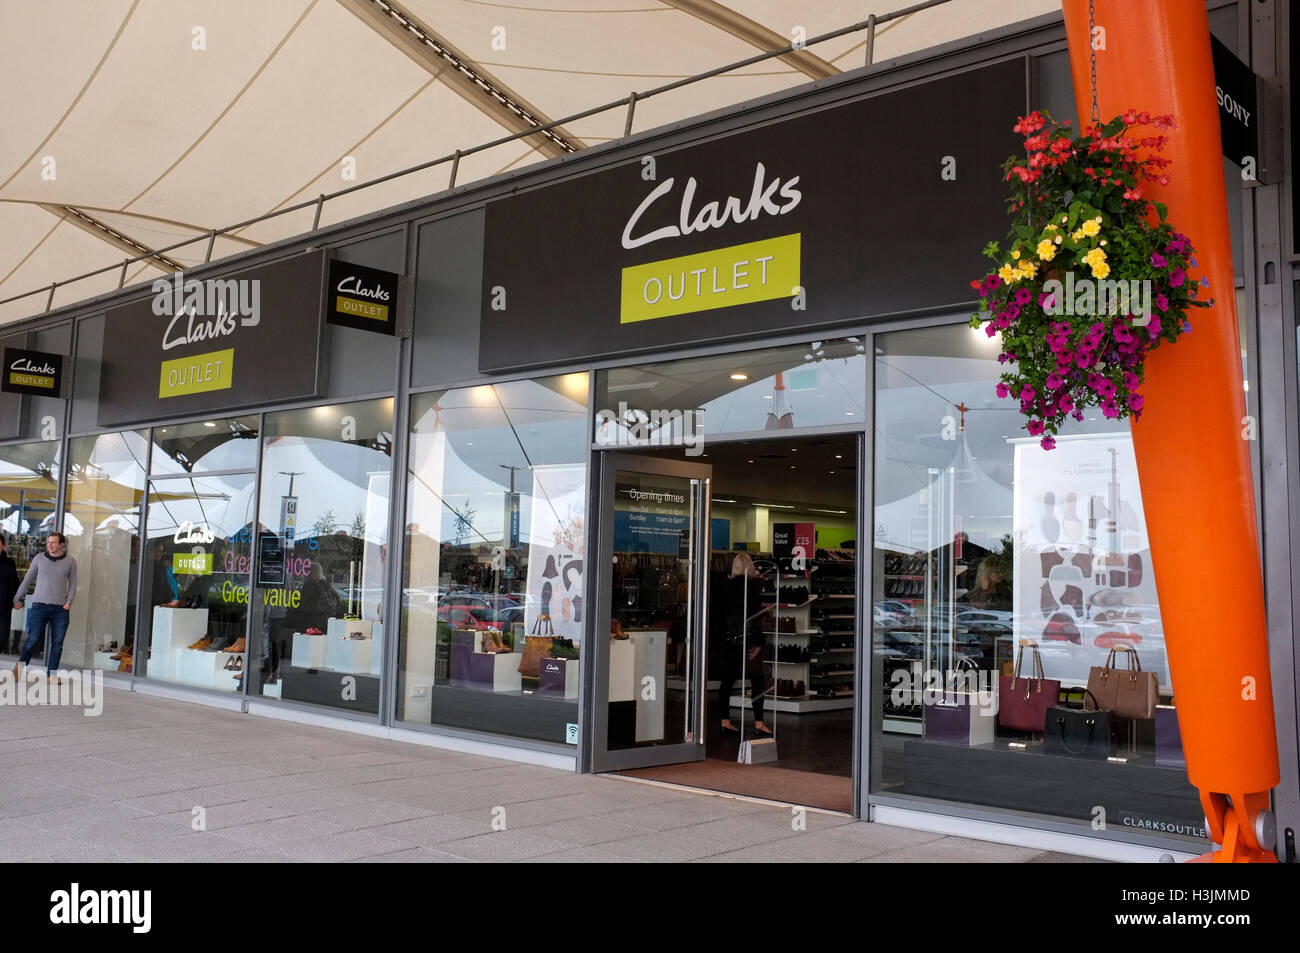 clarks discount store uk